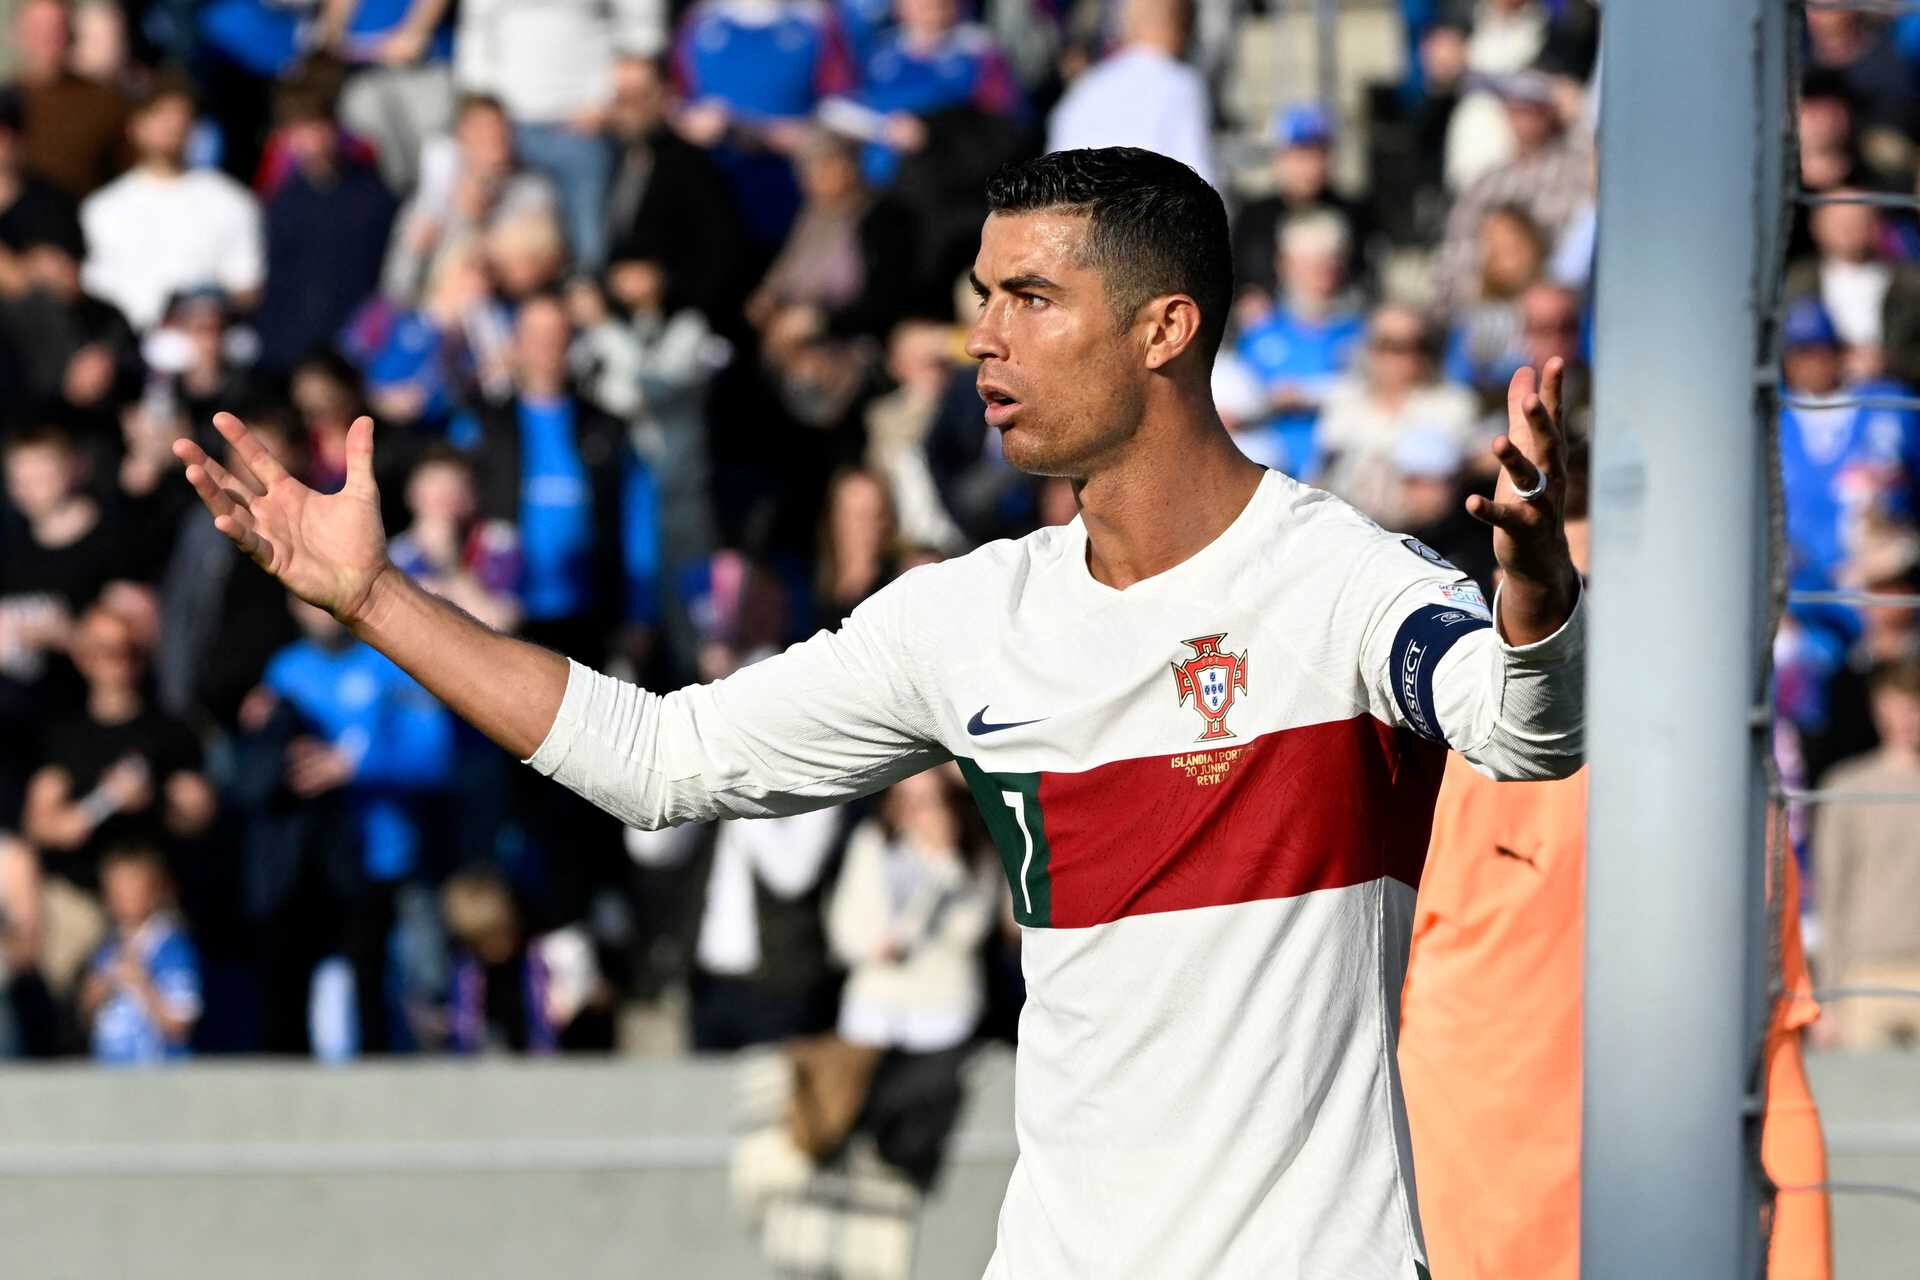 Cristiano Ronaldo: “Não vou jogar mais na Europa. A Europa perdeu